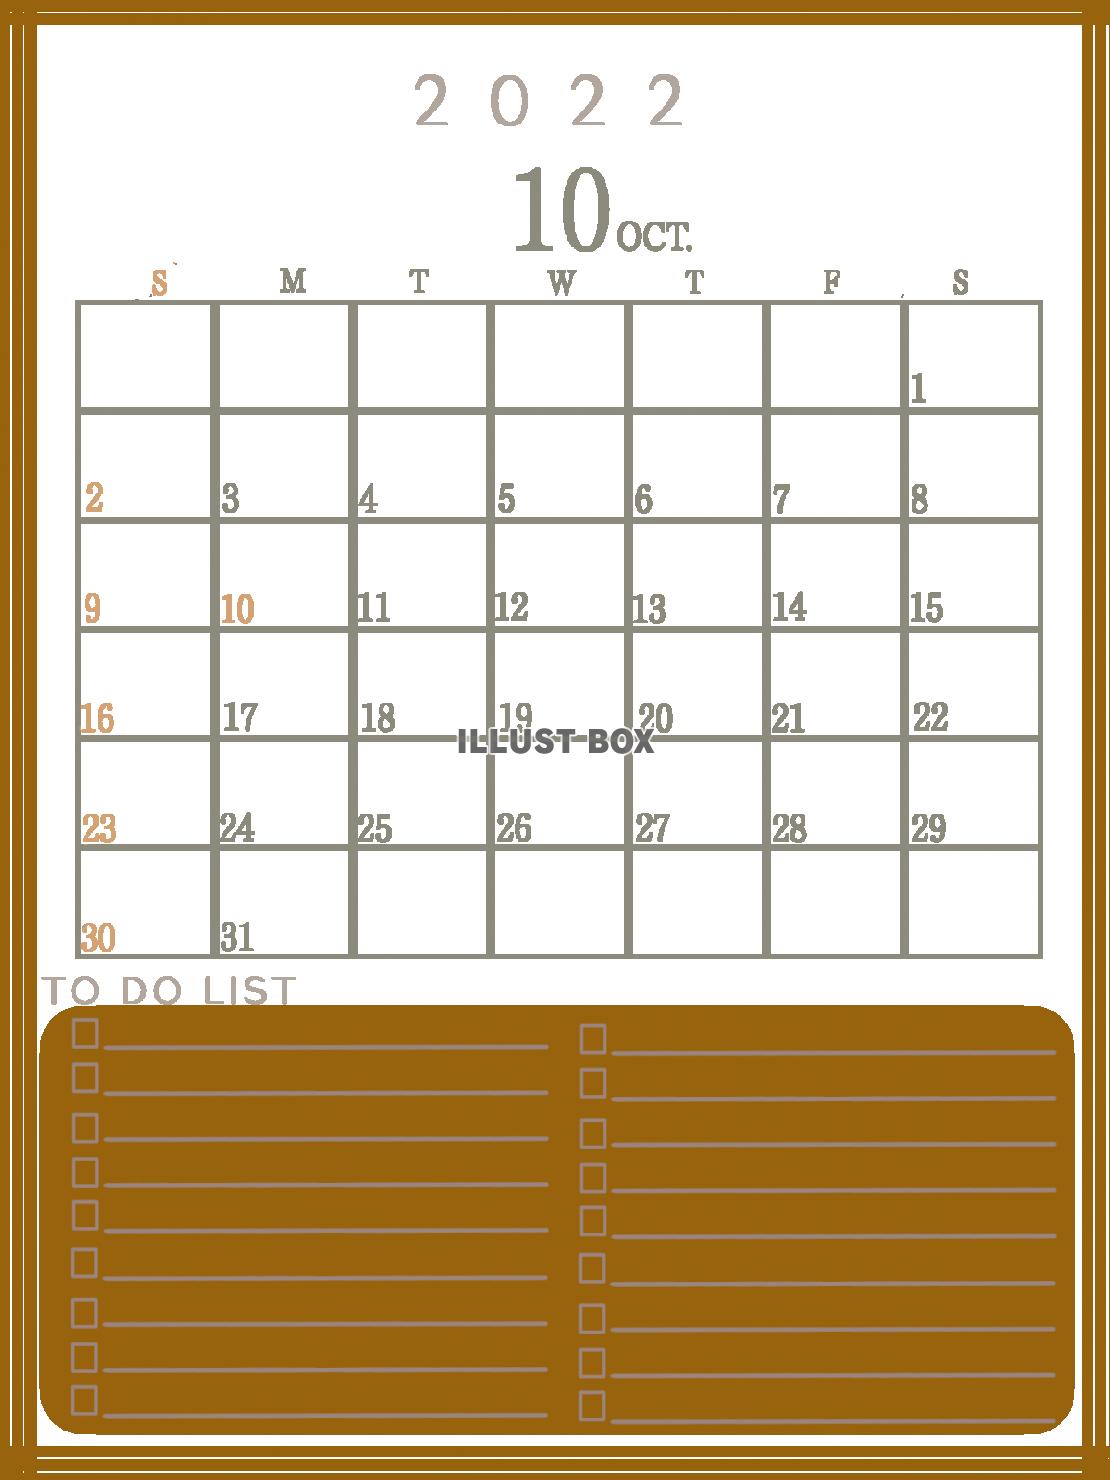 ２０２２年　TODOリストのあるカレンダー　（１０月）